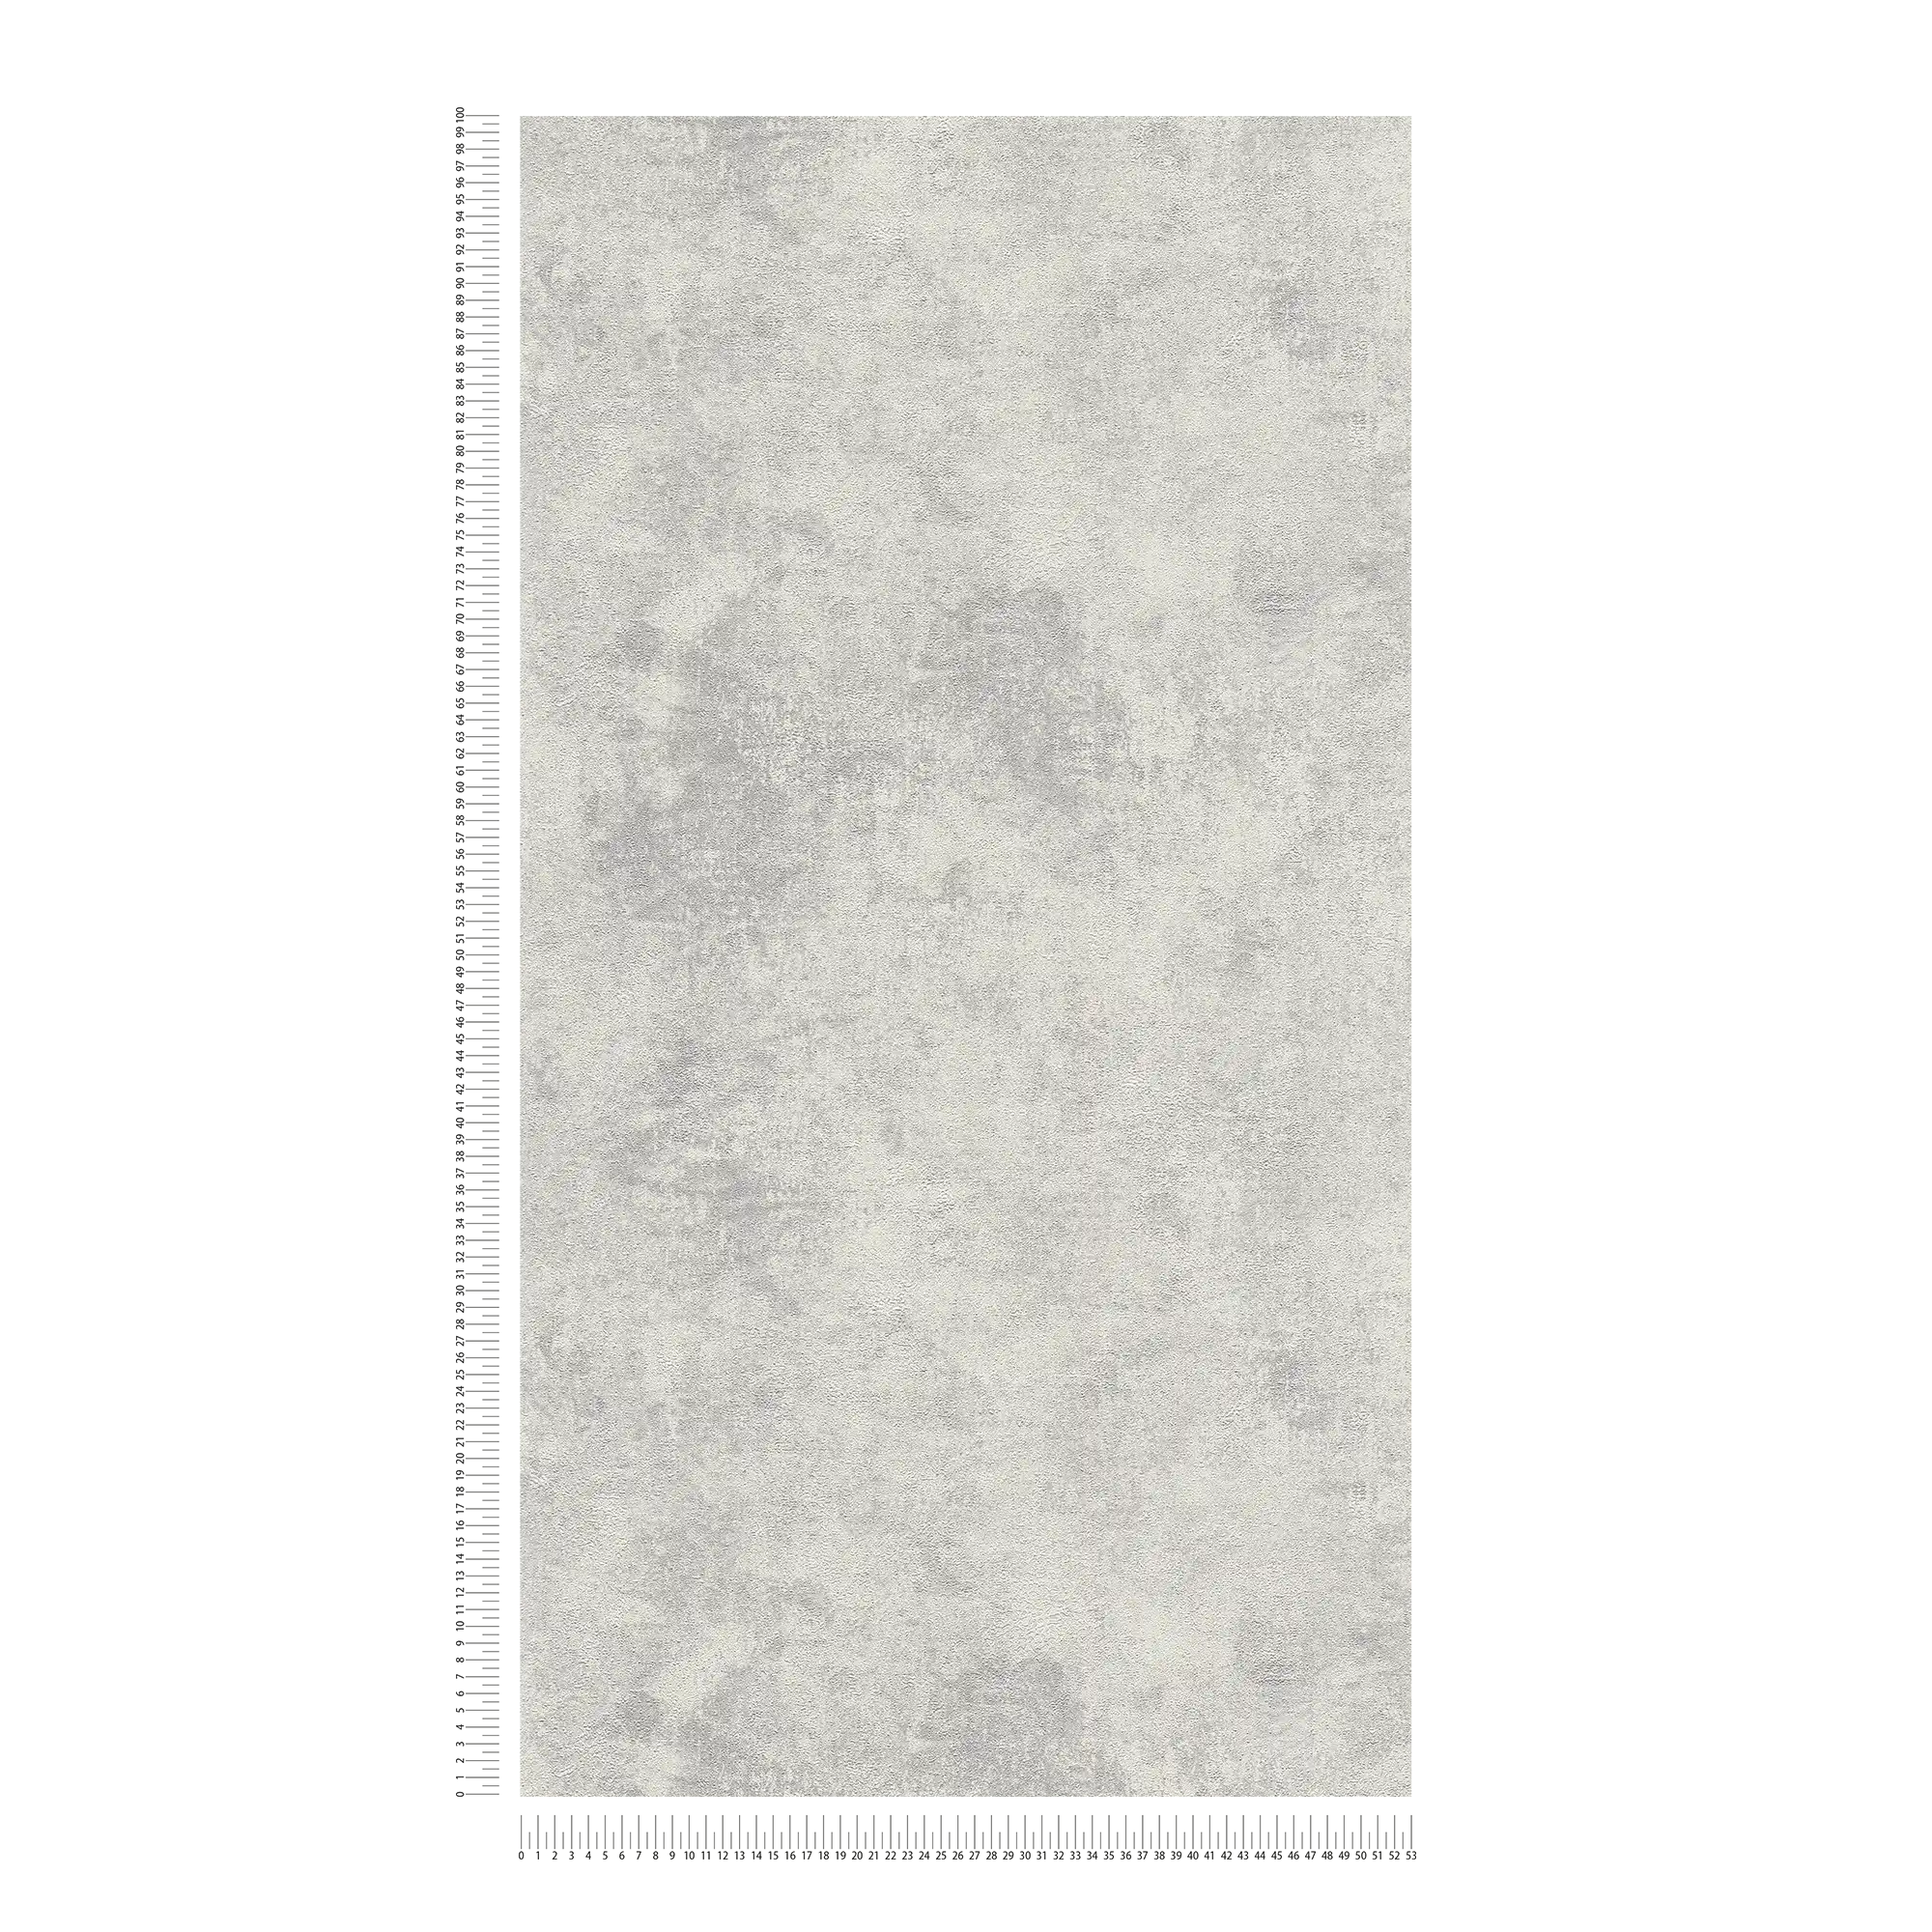             Vliesbehang met schijvengipslook & structuurpatroon - grijs, zilver
        